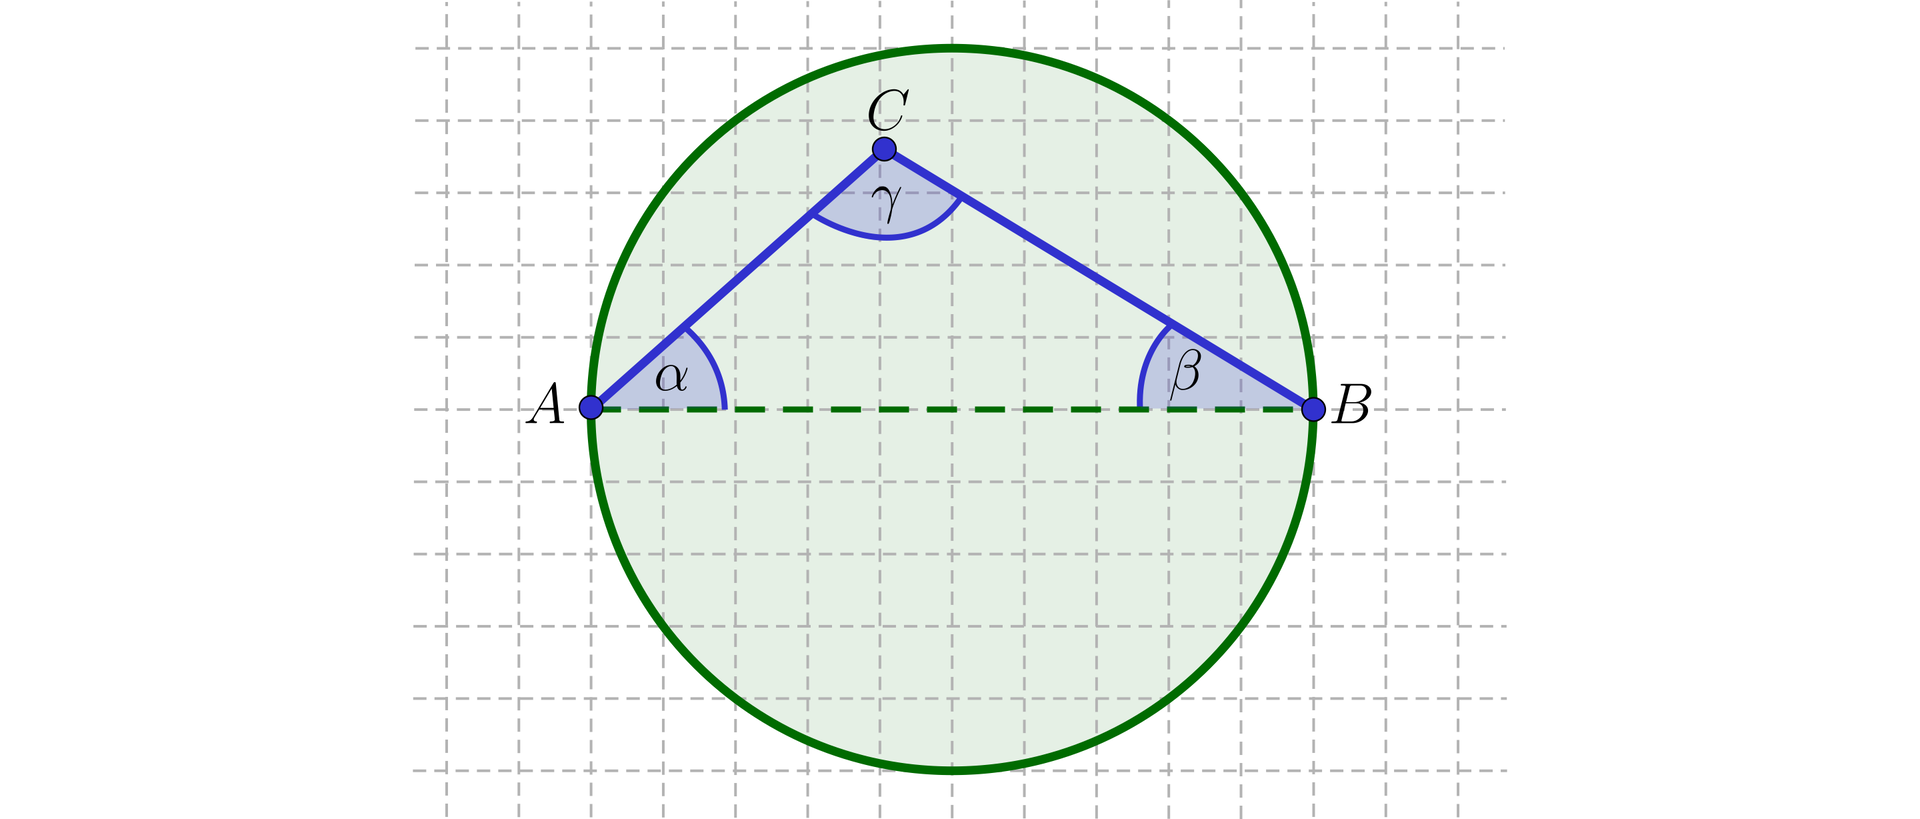 Ilustracja przedstawia trójkąt A B C o kątach wewnętrznych alfa przy wierzchołku A, beta przy wierzchołku B, gamma przy wierzchołku C. Figura leży na poziomym boku A B będącym jednocześnie średnicą zielonego koła. Punkt C znajduje się w środku koła o średnicy A B. 